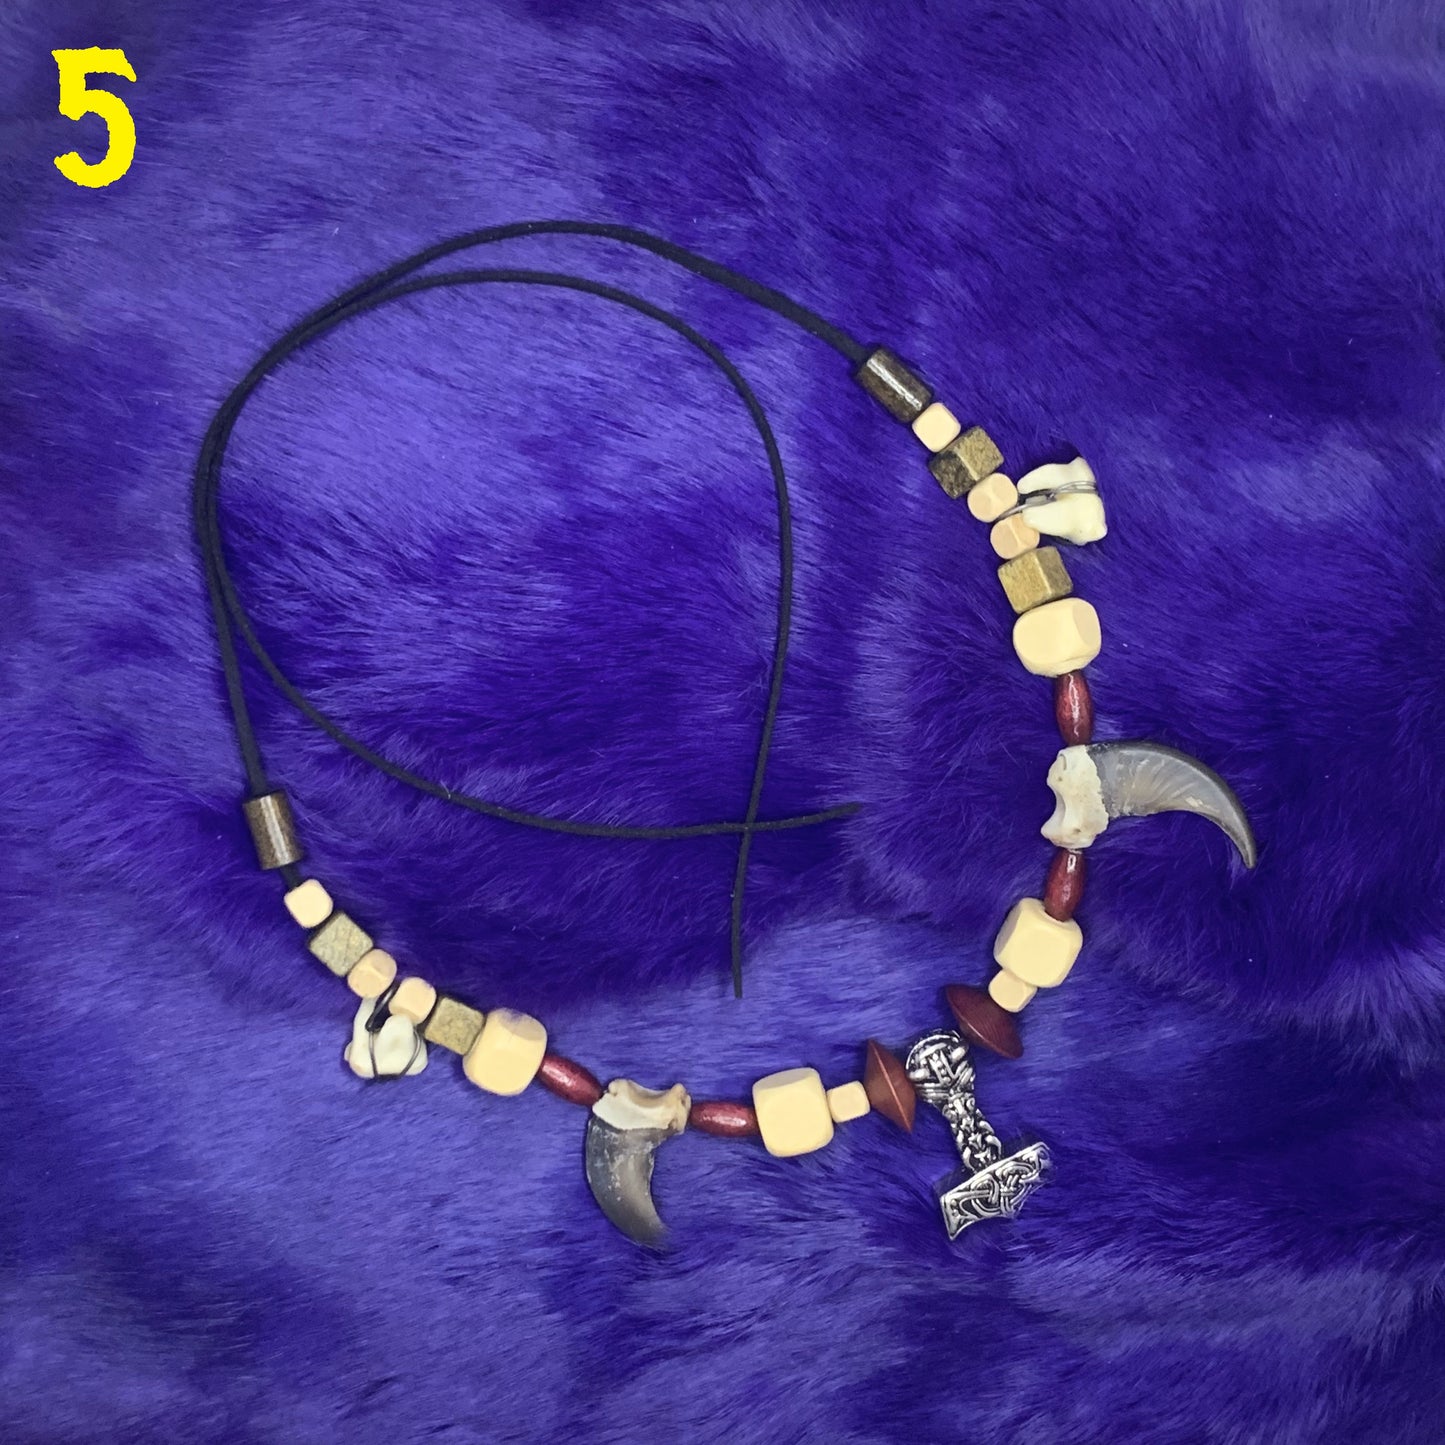 Necklaces "The Purple Collection" - Unique